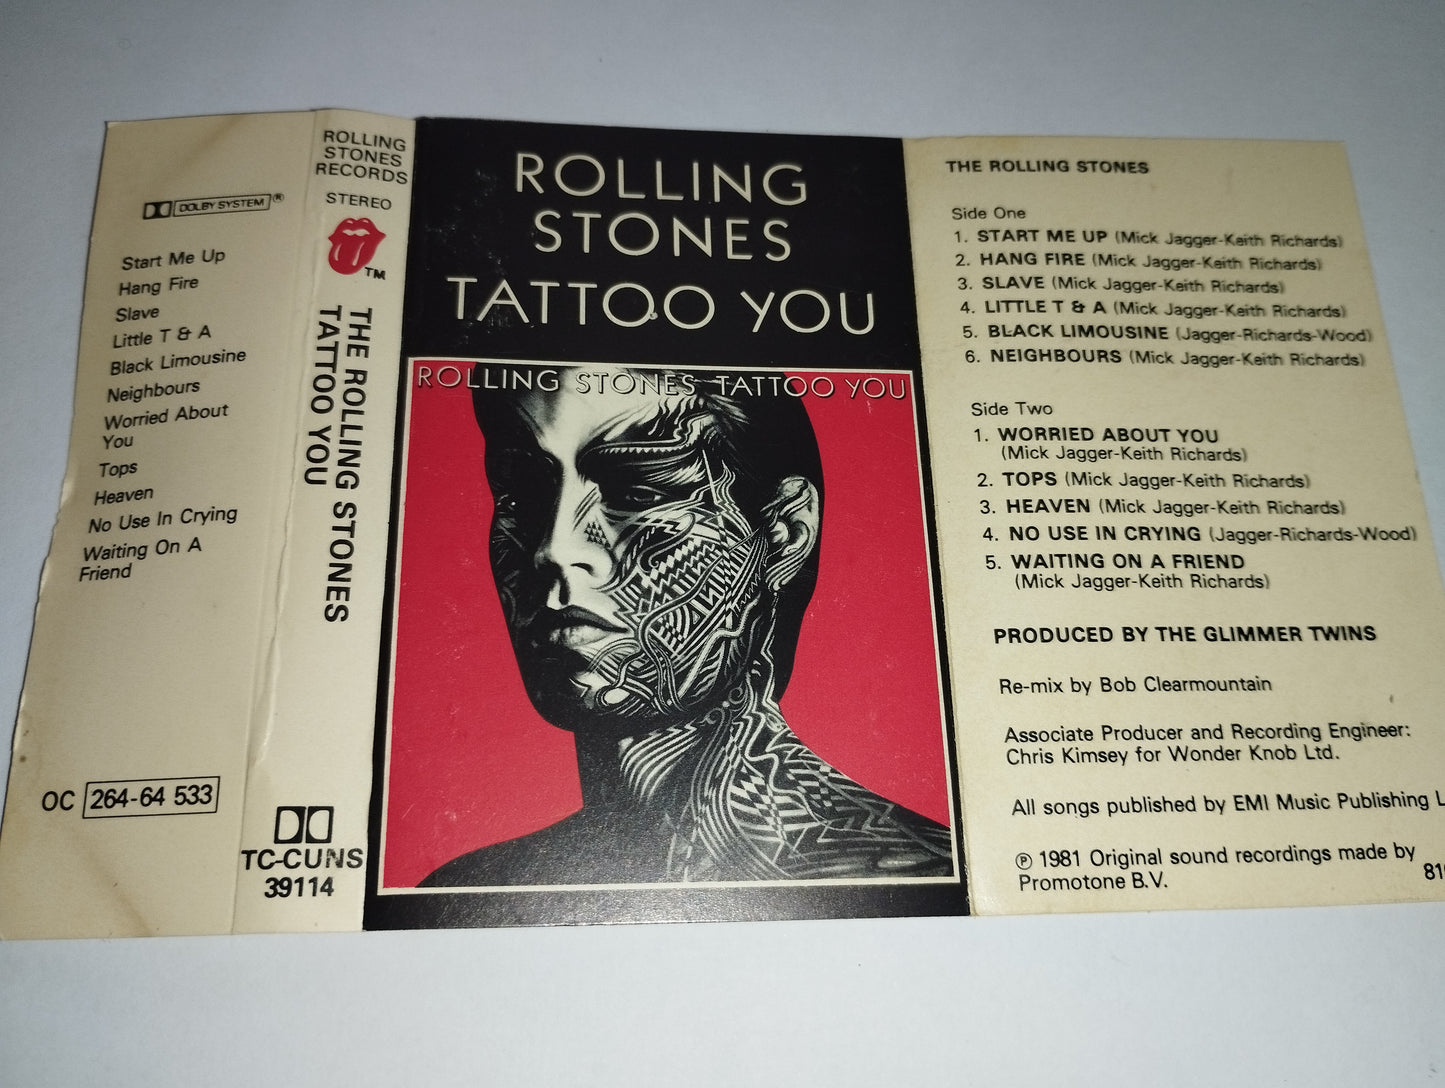 Tattoo You Rolling Stones Musicassetta
Edita nel 1981
Stampa inglese Cod.TC-CUNS 39114